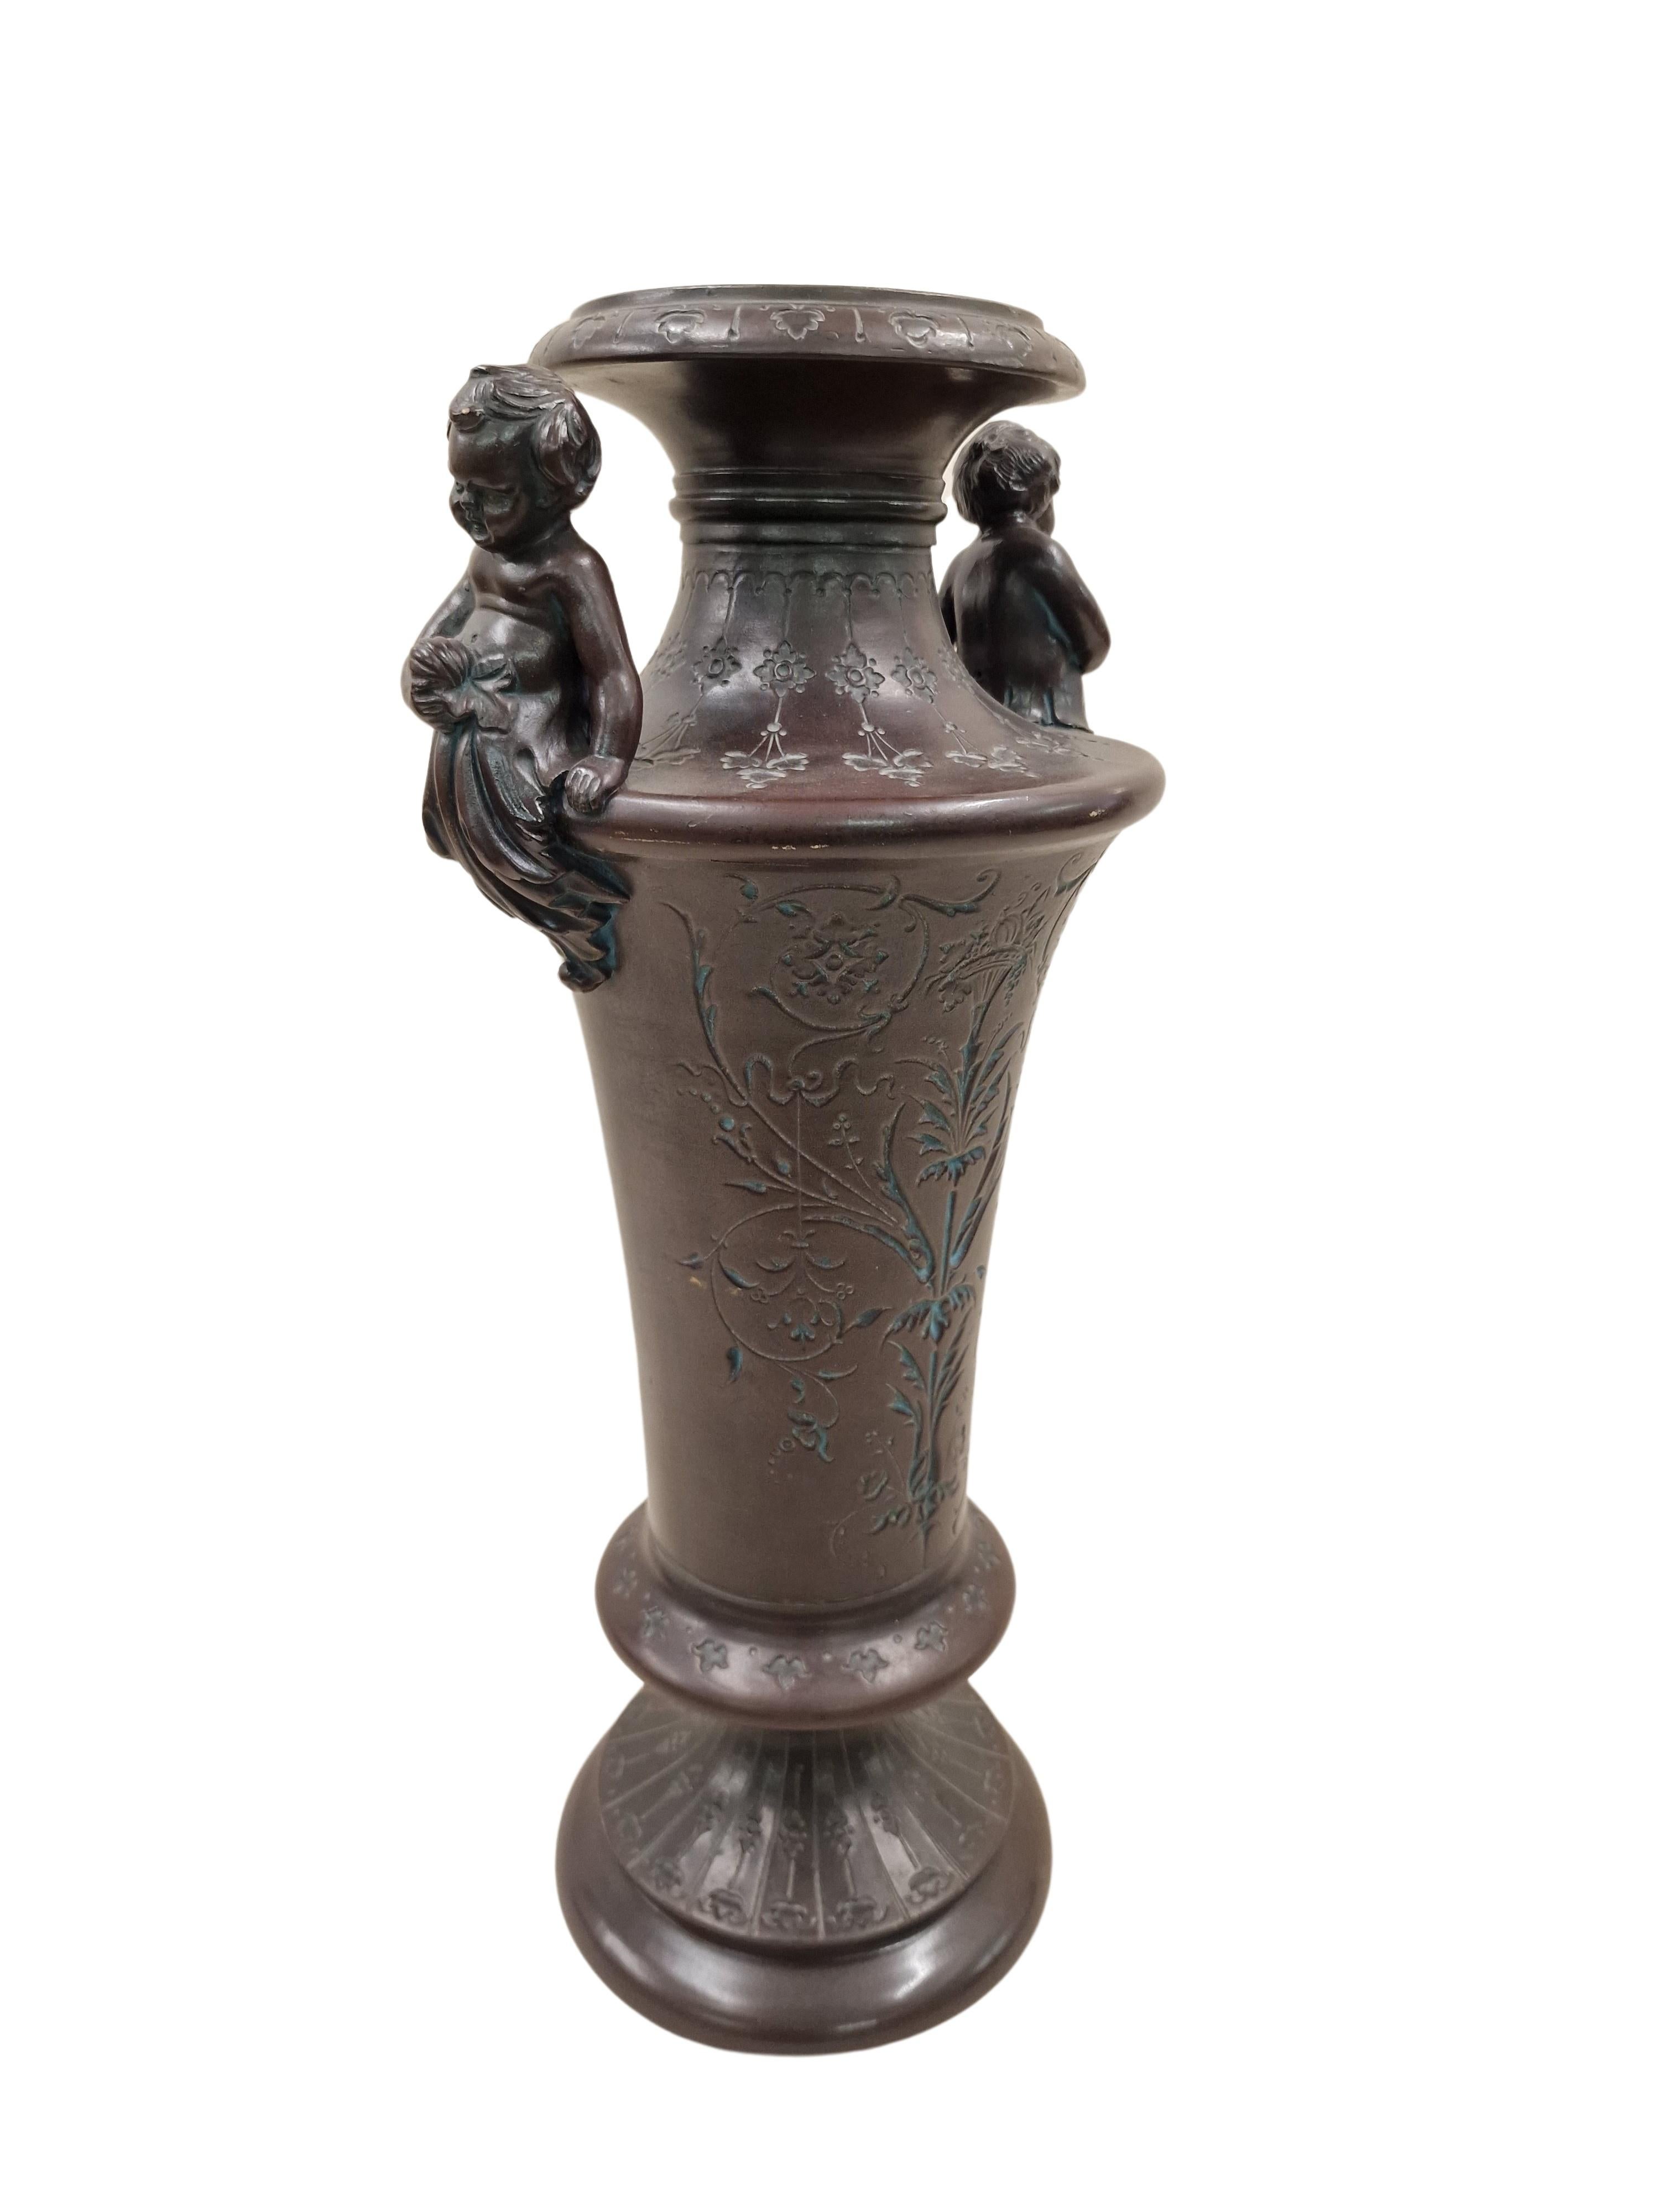 Riesige Vase in Form einer Amphora, von dem bekannten Hersteller Bernhard Bloch aus Bohemia. 
Die schöne, aufstrebende Form der Amphora ist mit einem handgeschnittenen Dekor über den ganzen Körper und auch auf dem Sockel verziert. Die Hauptseite ist